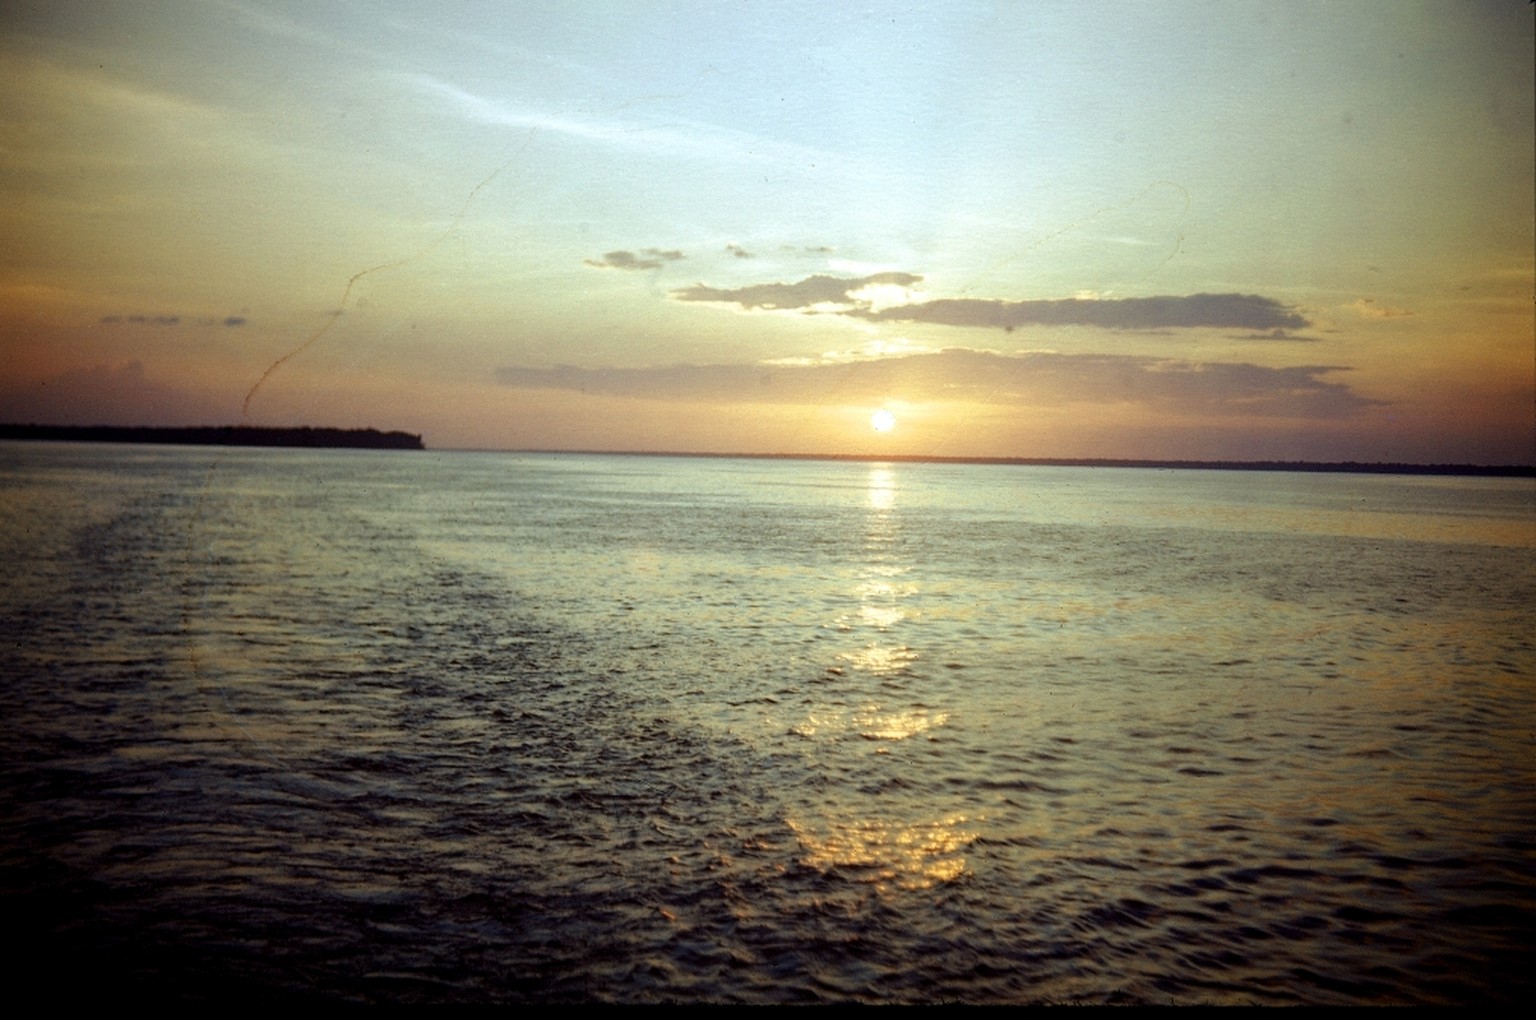 Sonnenuntergang an einem Fluss

Sonnenuntergang am Amazonas bei Gelem 
Beschreibung:
Sonnenuntergang an einem Fluss 
Datierung:
1947